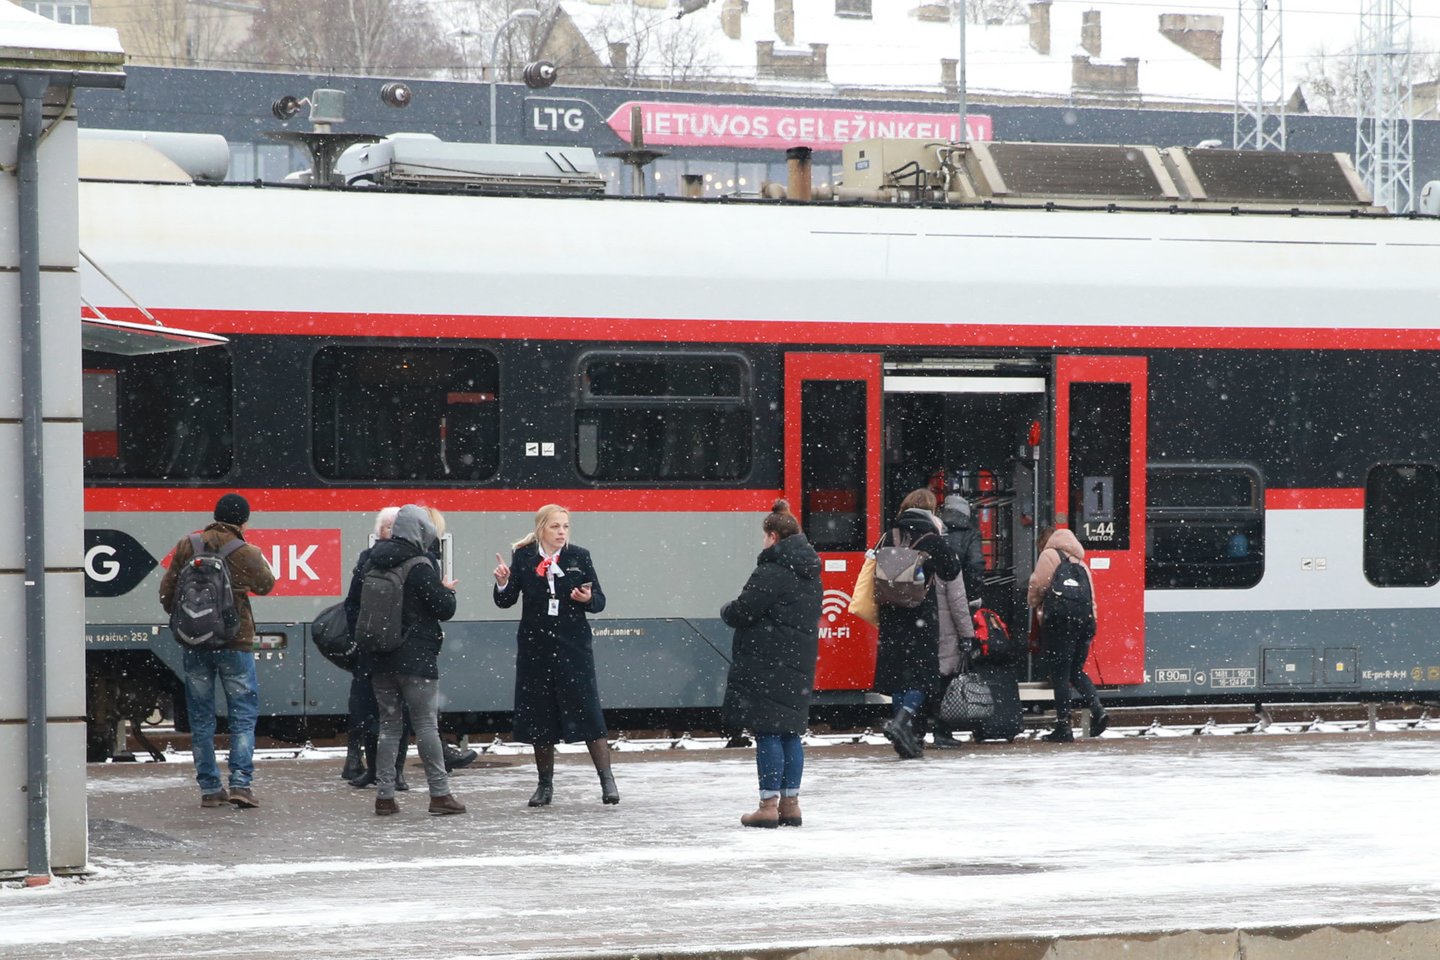 Penktadienį pradėję riedėti kalėdiniai traukiniai supykdė keleivius.<br>R.Danisevičiaus nuotr.